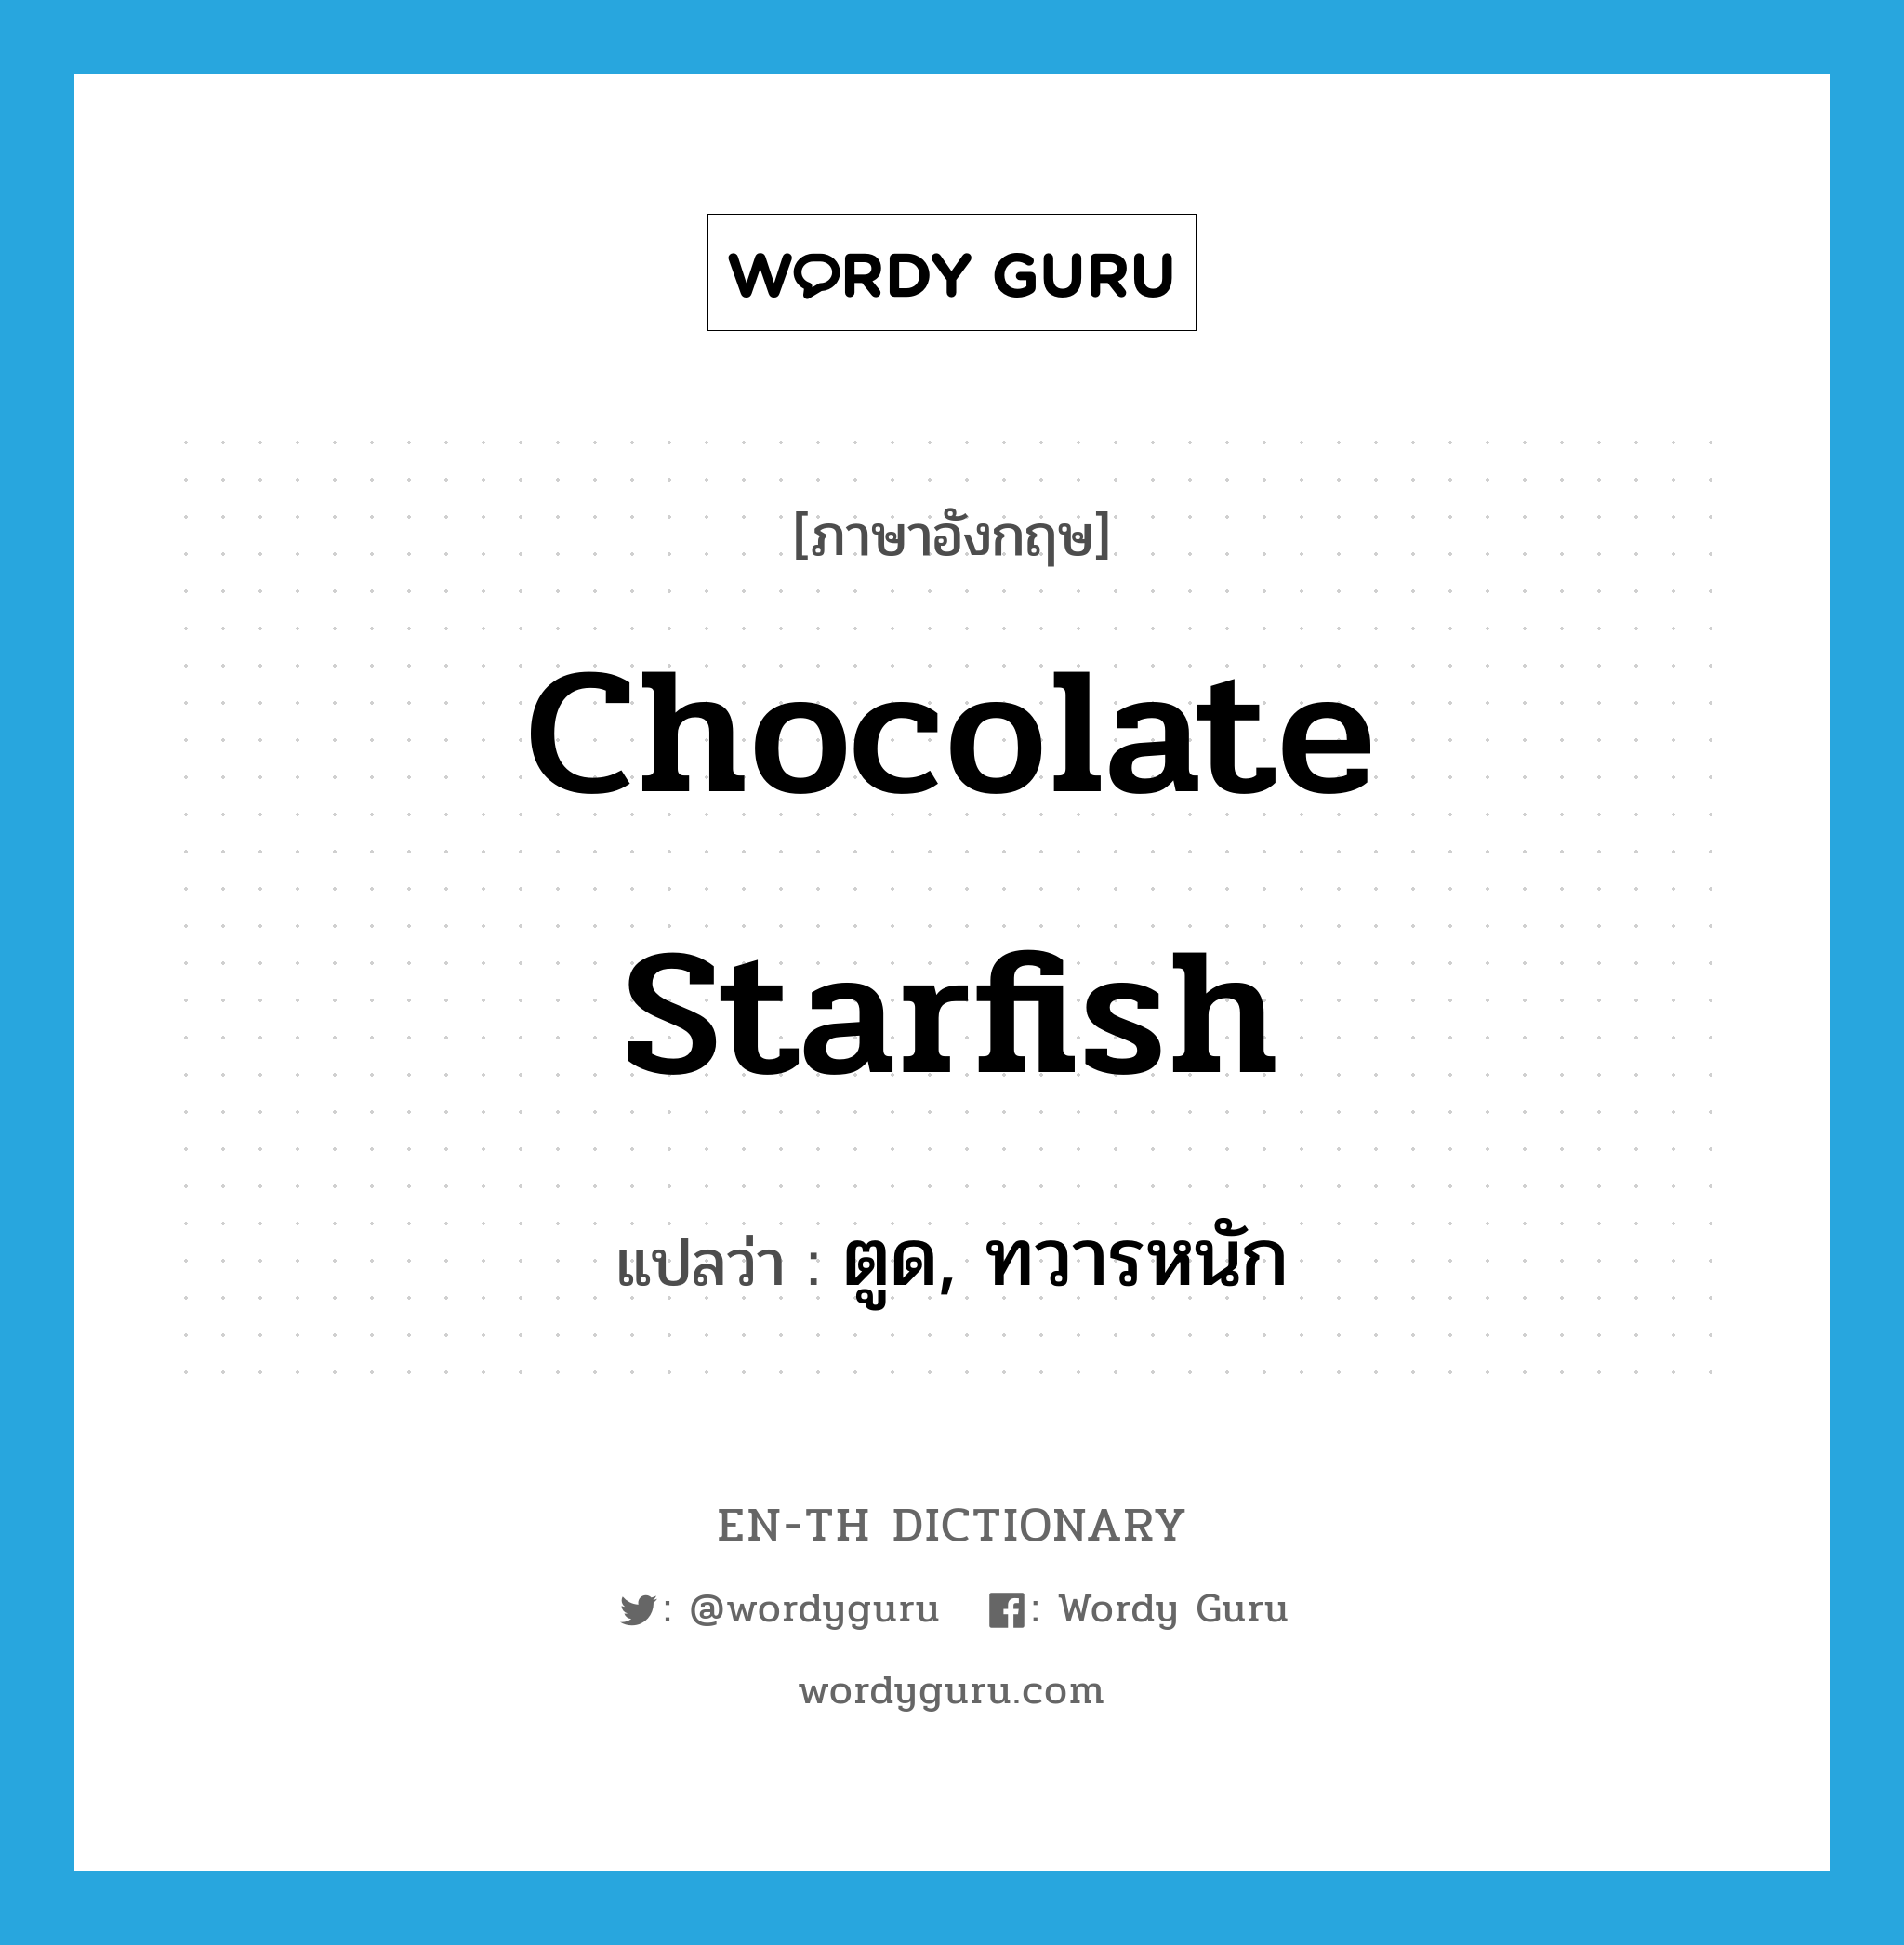 ตูด, ทวารหนัก ภาษาอังกฤษ?, คำศัพท์ภาษาอังกฤษ ตูด, ทวารหนัก แปลว่า chocolate starfish ประเภท SL หมวด SL